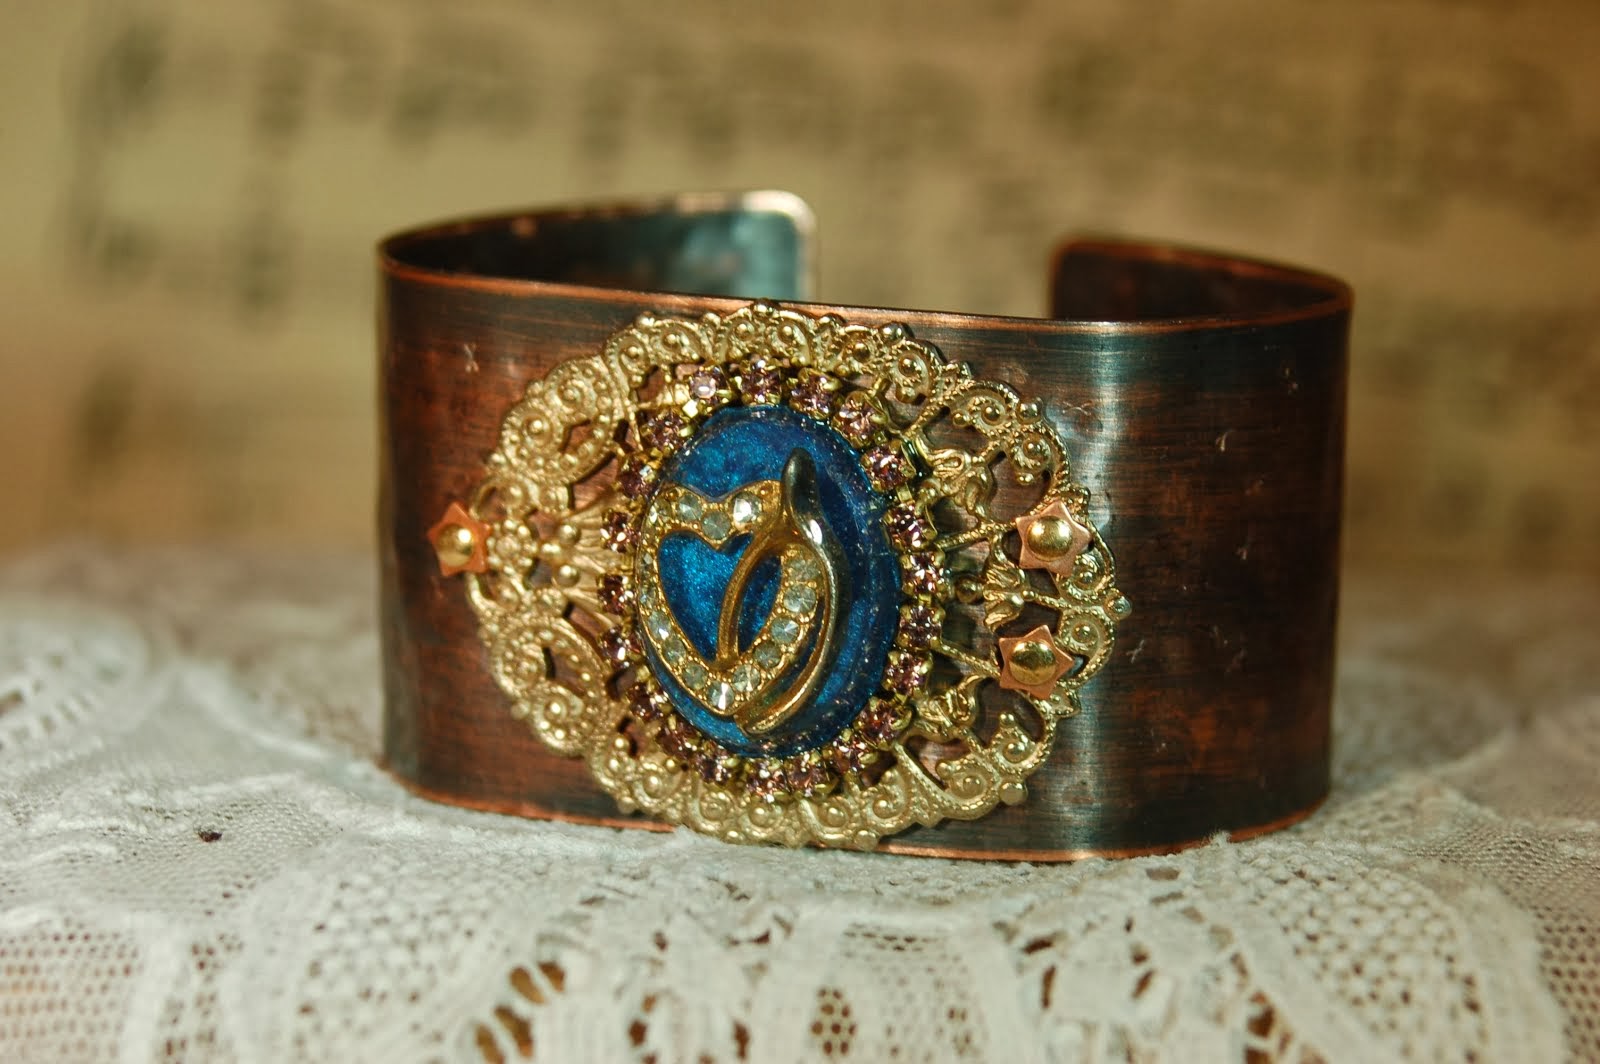 Copper bracelet with wishbone earring set in resin